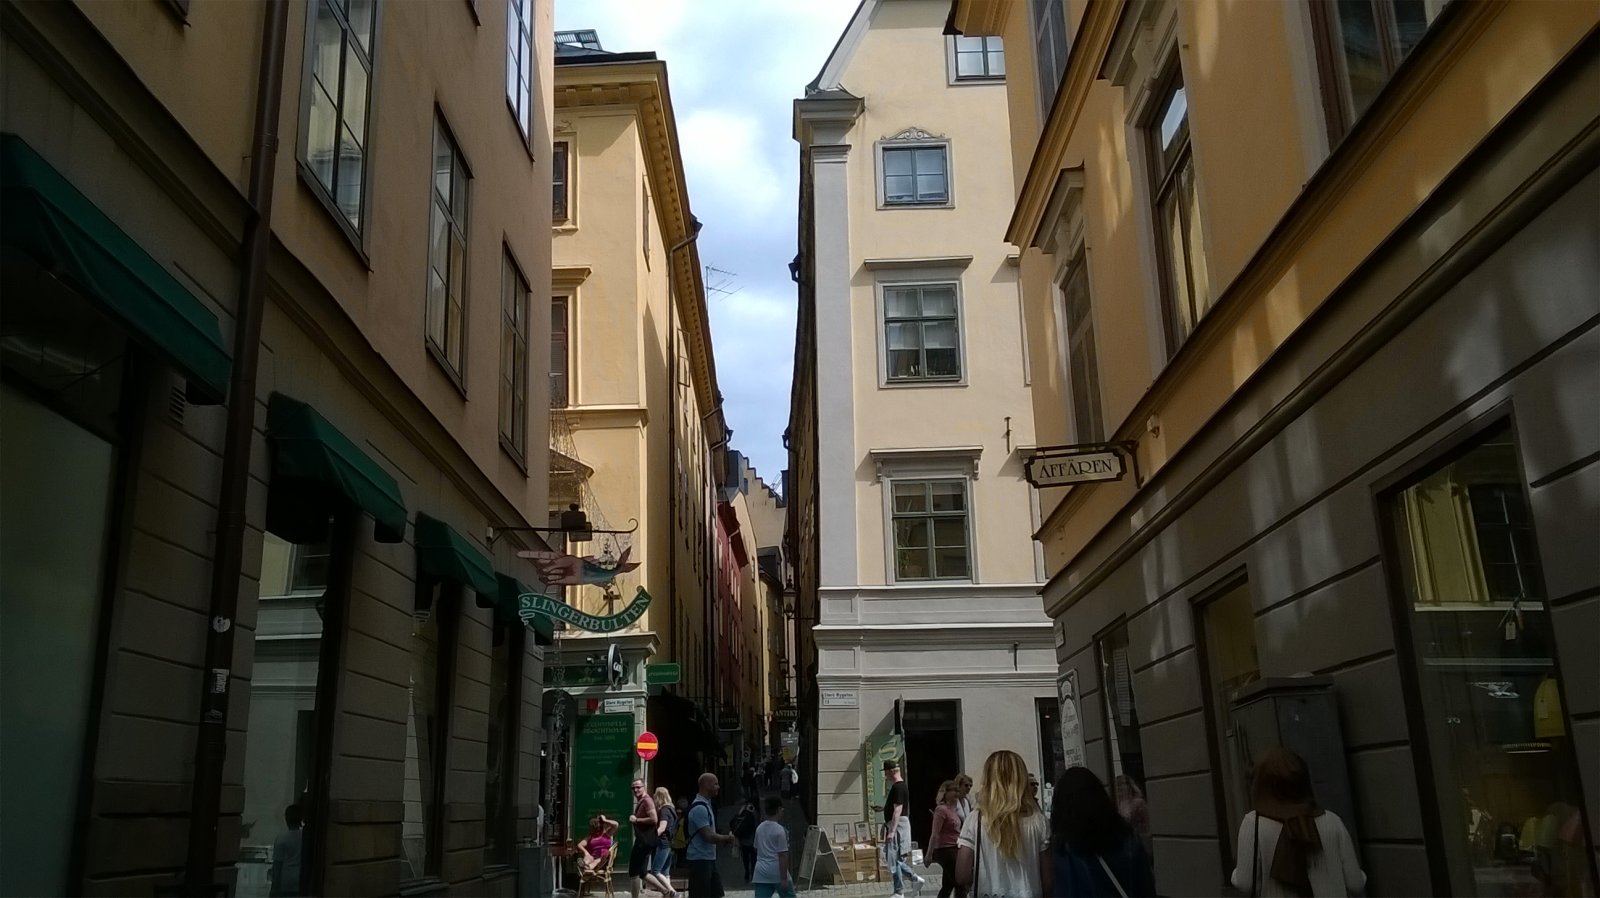 OLD TOWN STOCKHOLM - SWEDEN